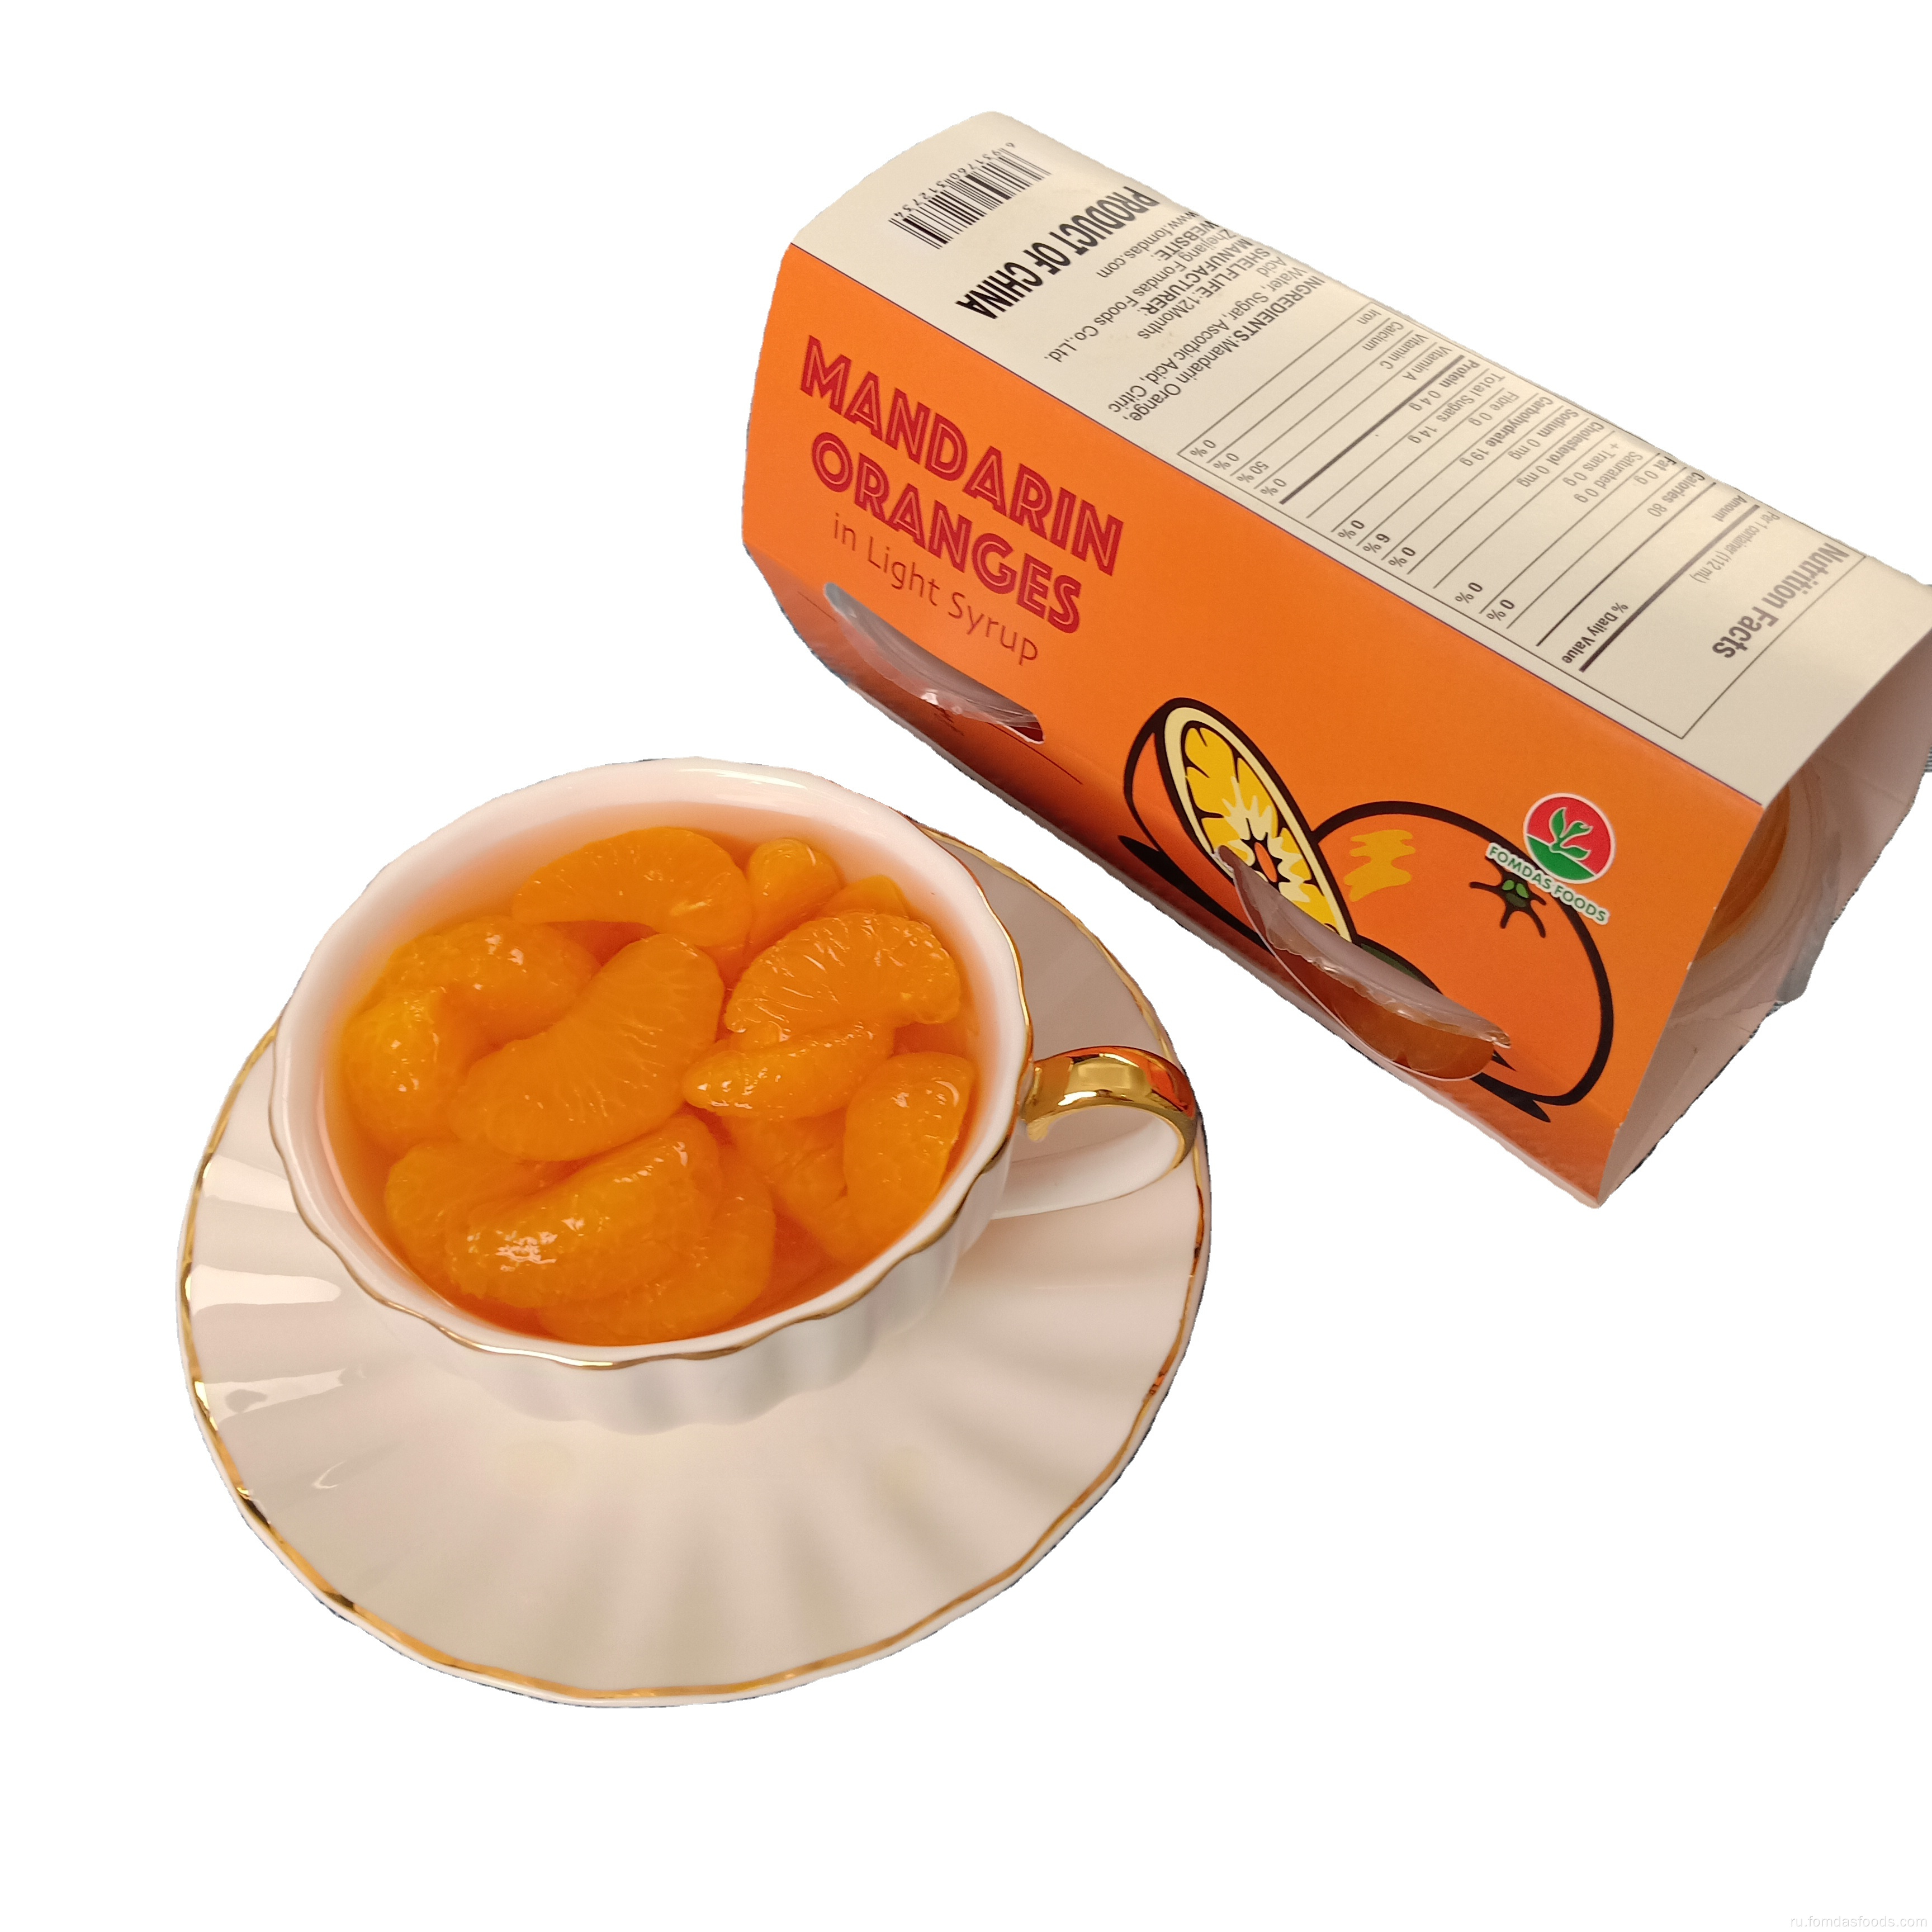 Консервы мандарин апельсины в светом сиропе 113 г